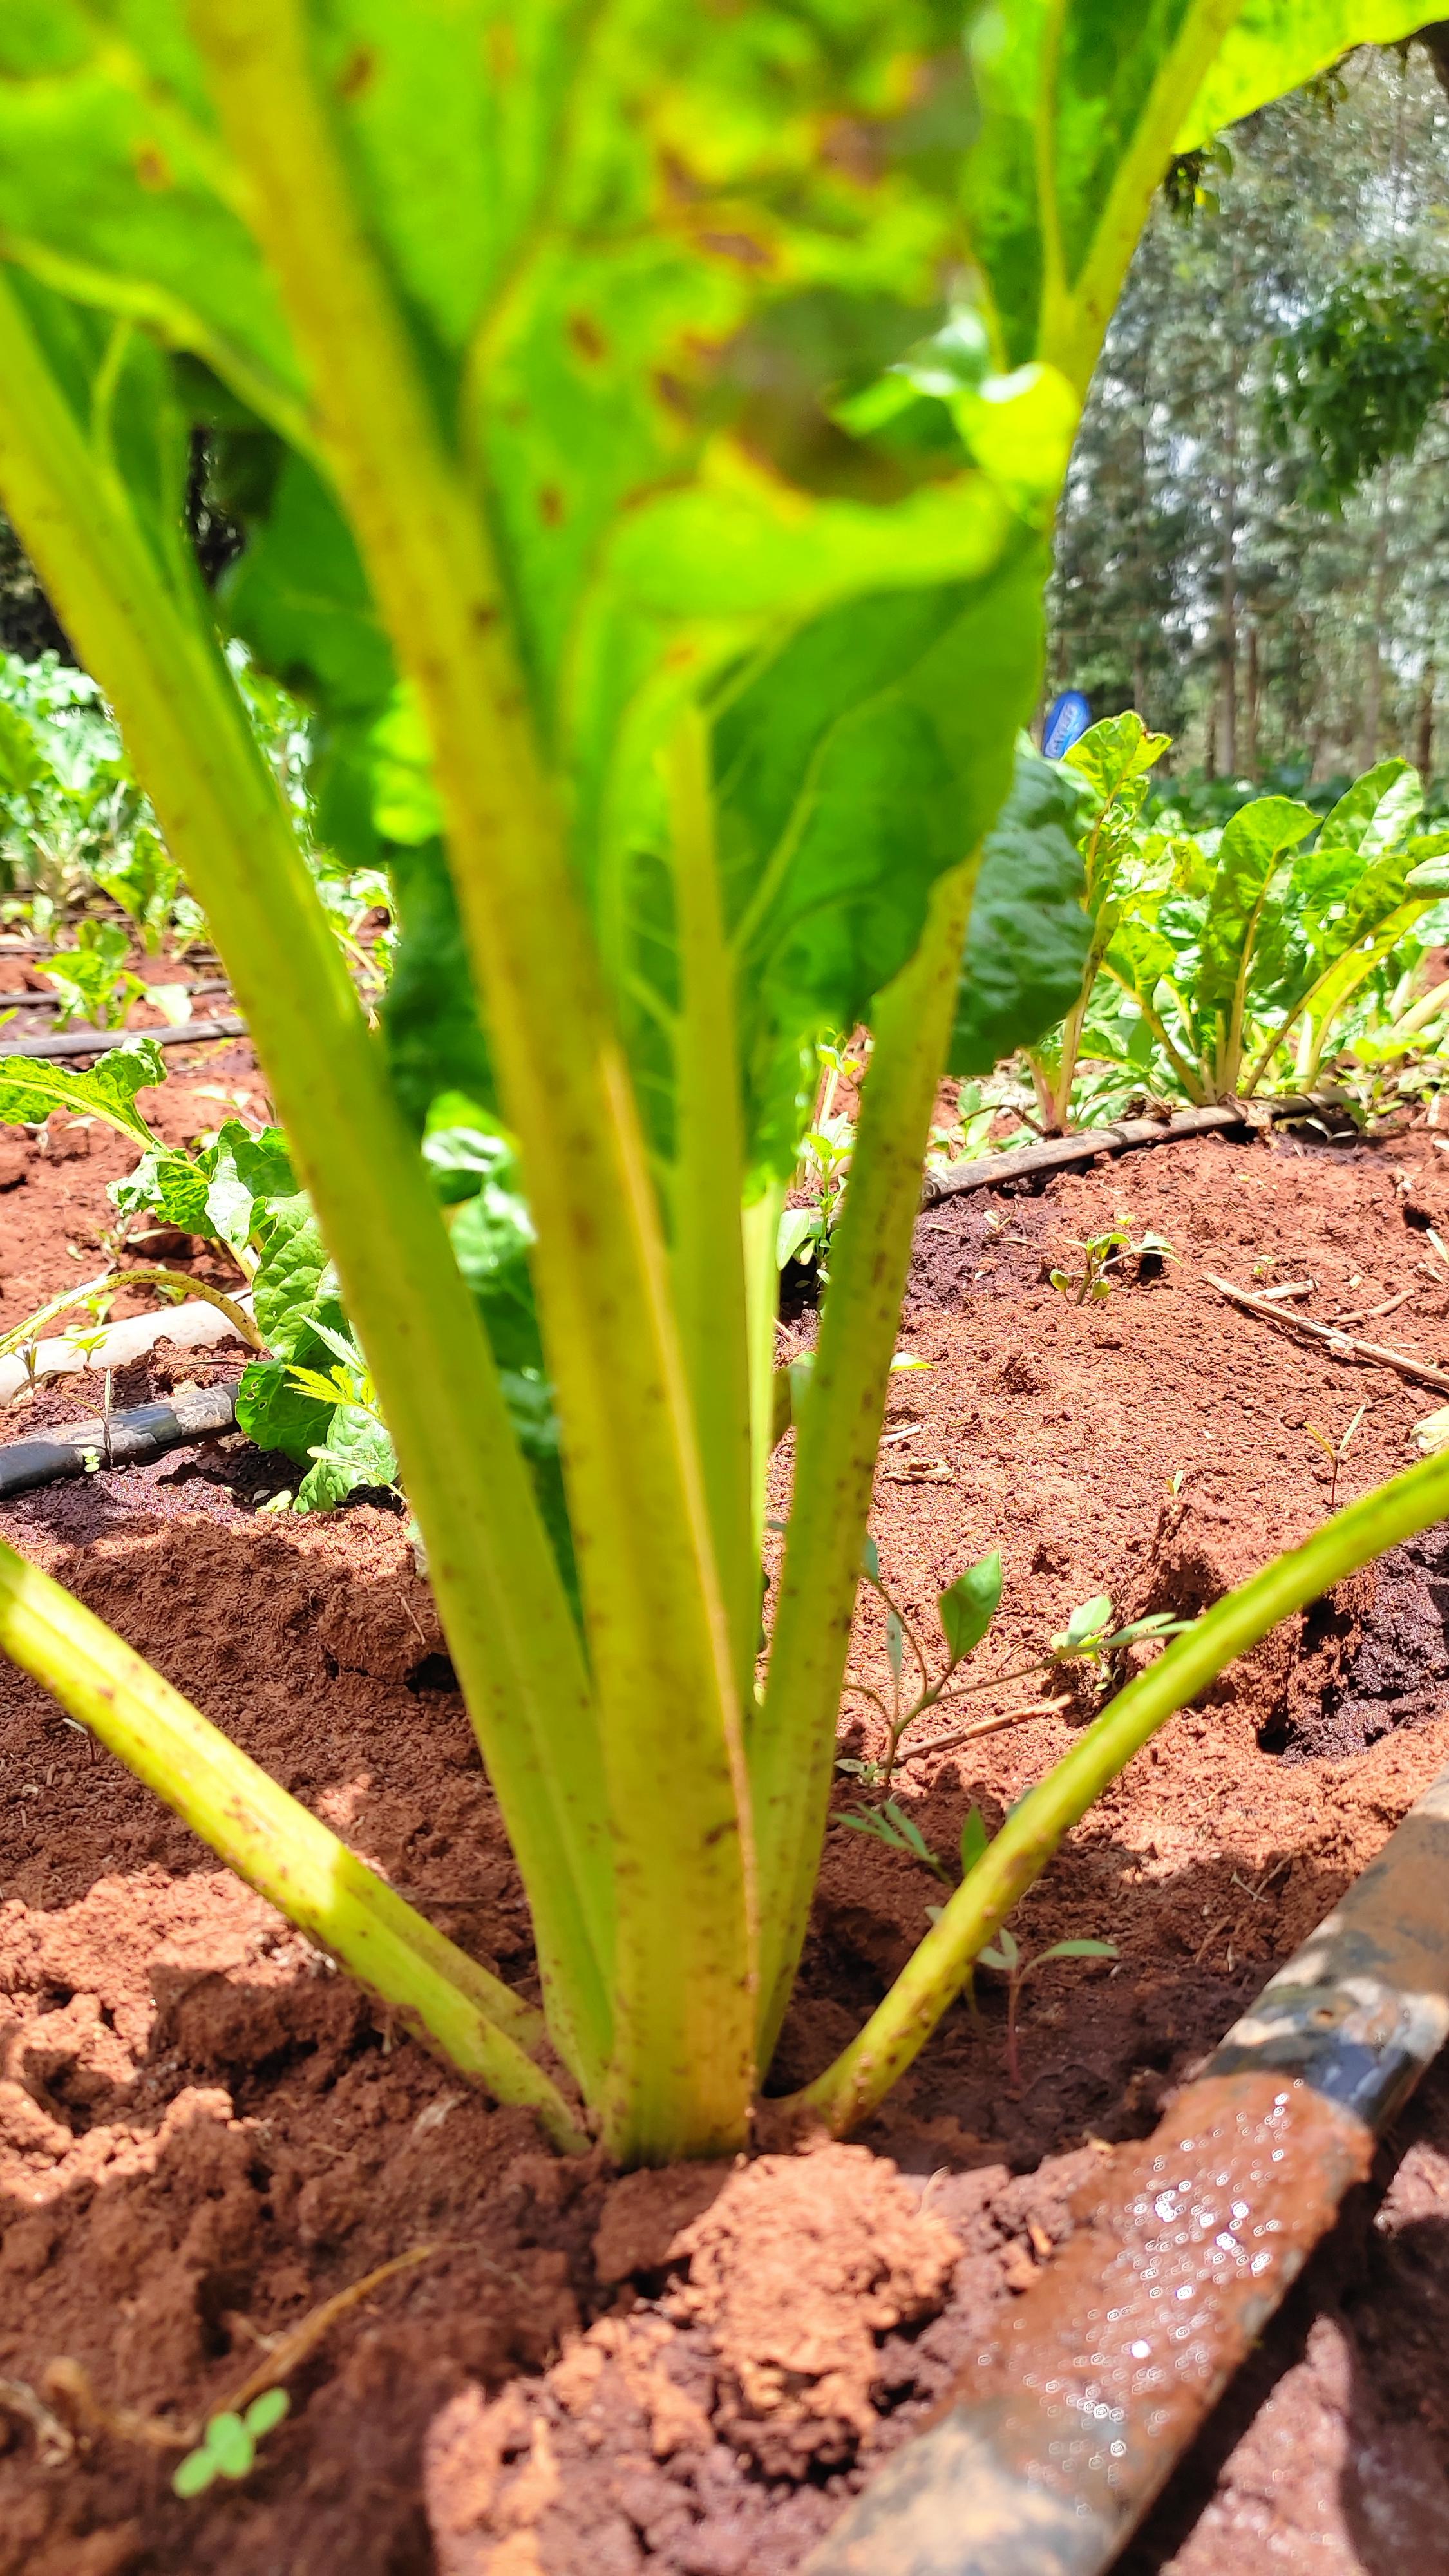 Spinach growing in Kenya